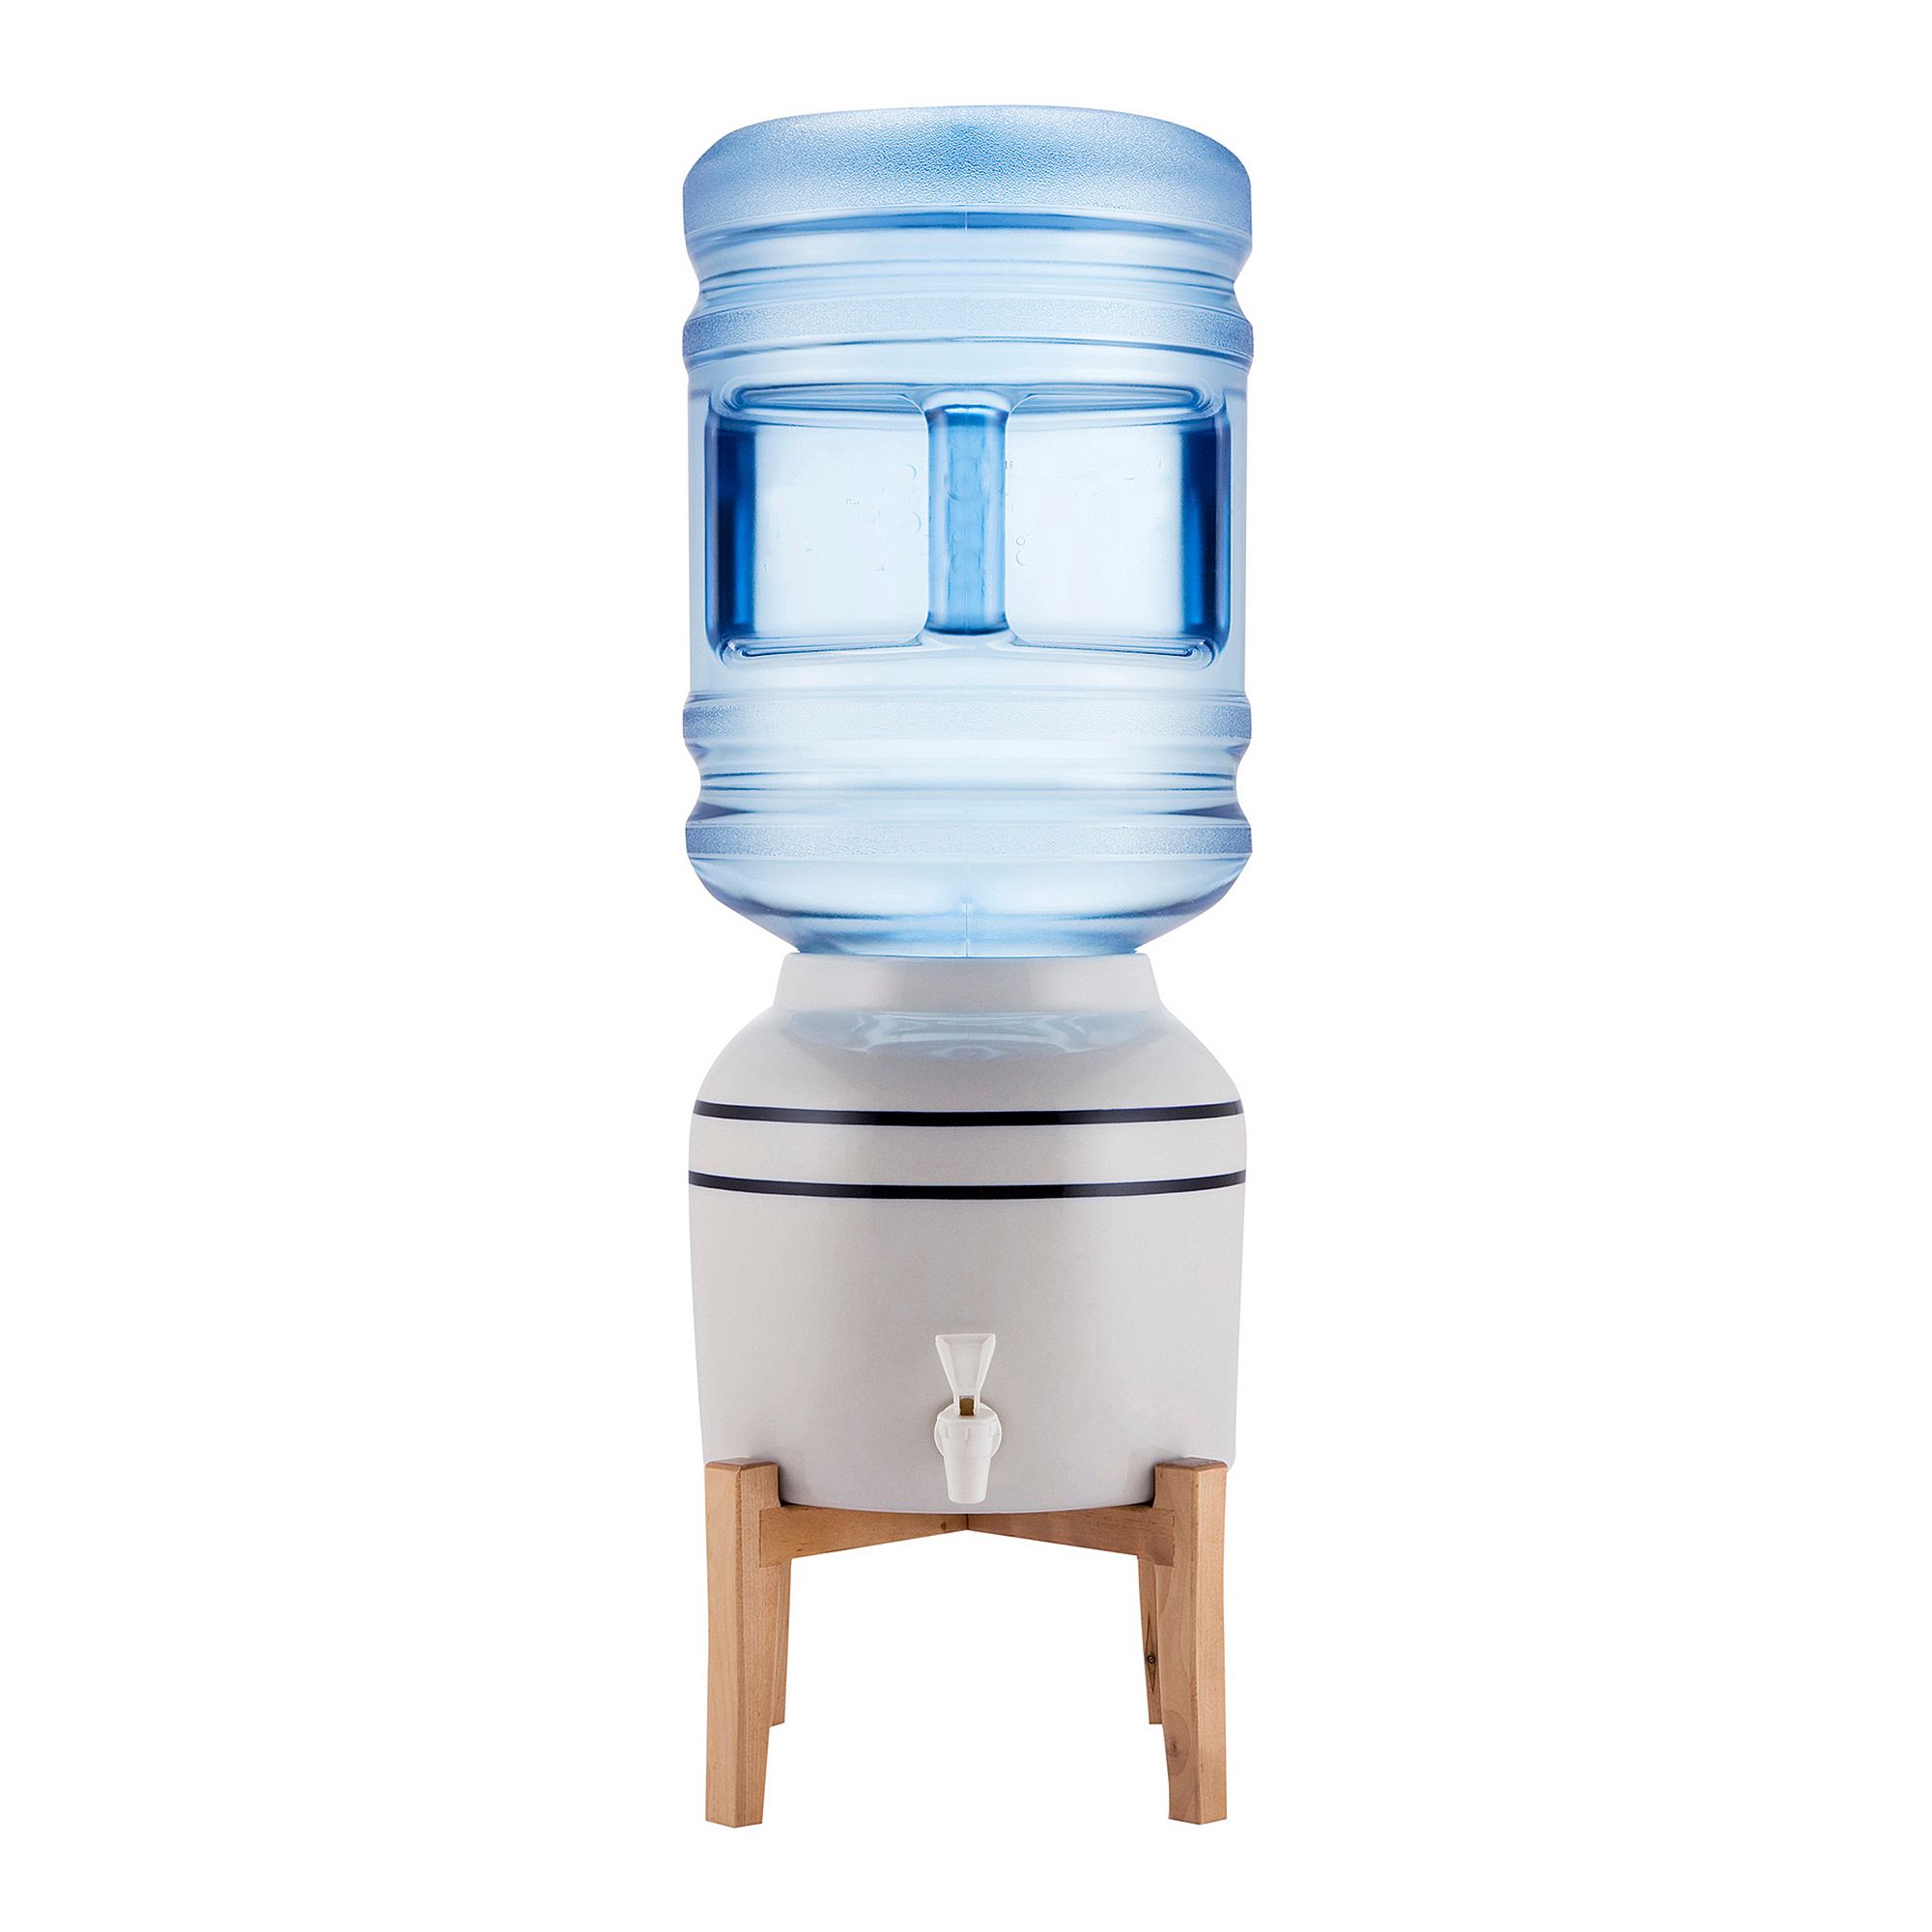 900114-1 Tabletop Bottled Water Dispenser